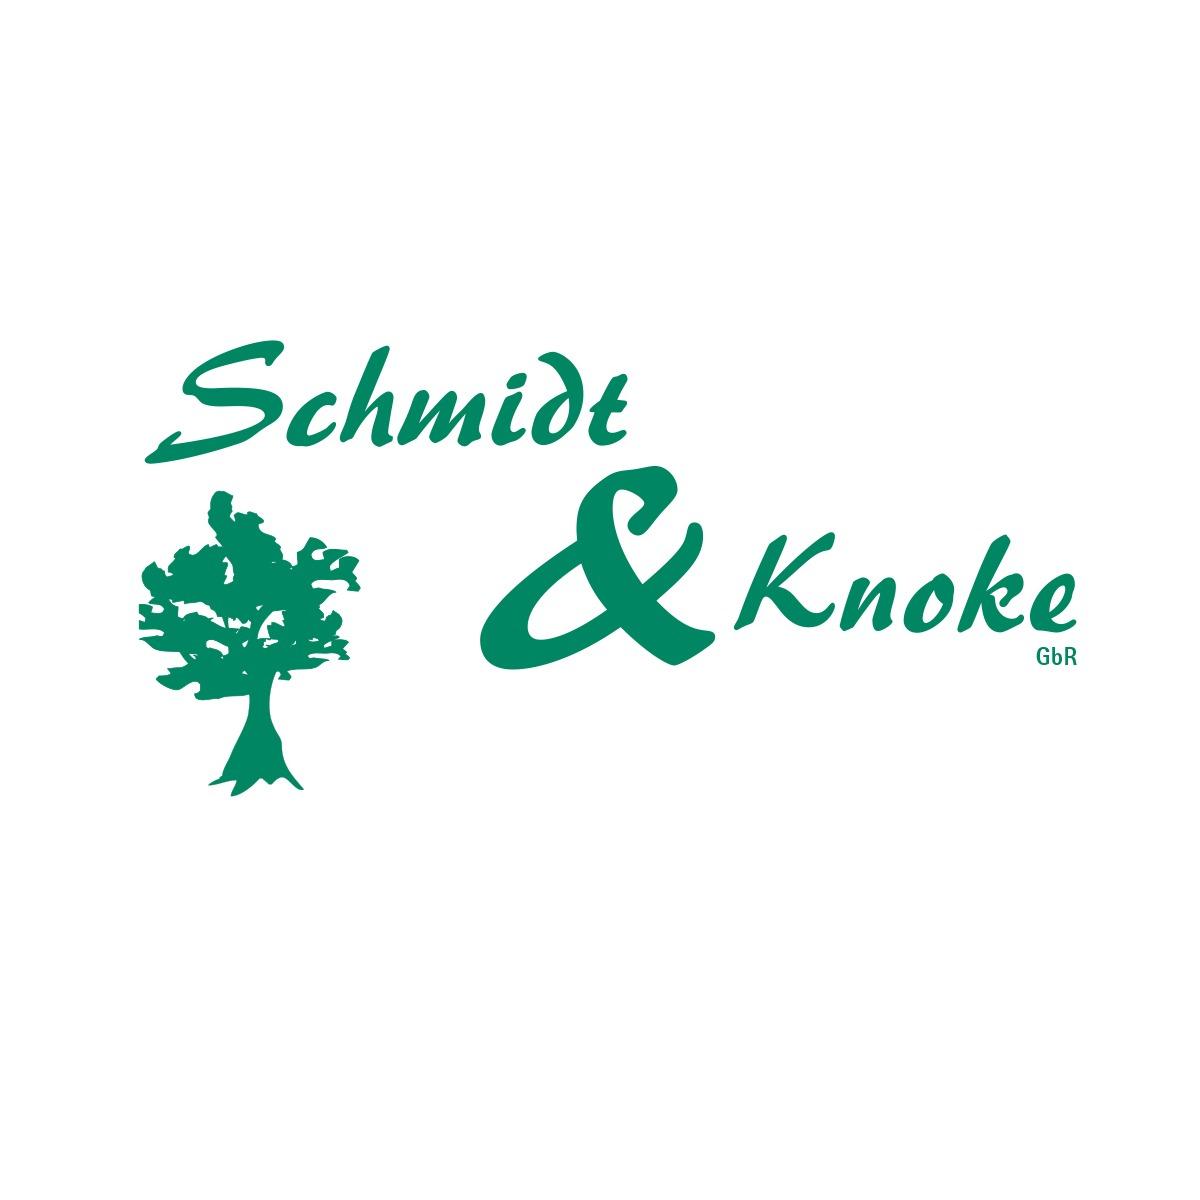 Schmidt & Knoke GbR Siegburg - Gartenpflege Landschaftsbau Pflasterarbeiten Teichbau in Siegburg - Logo